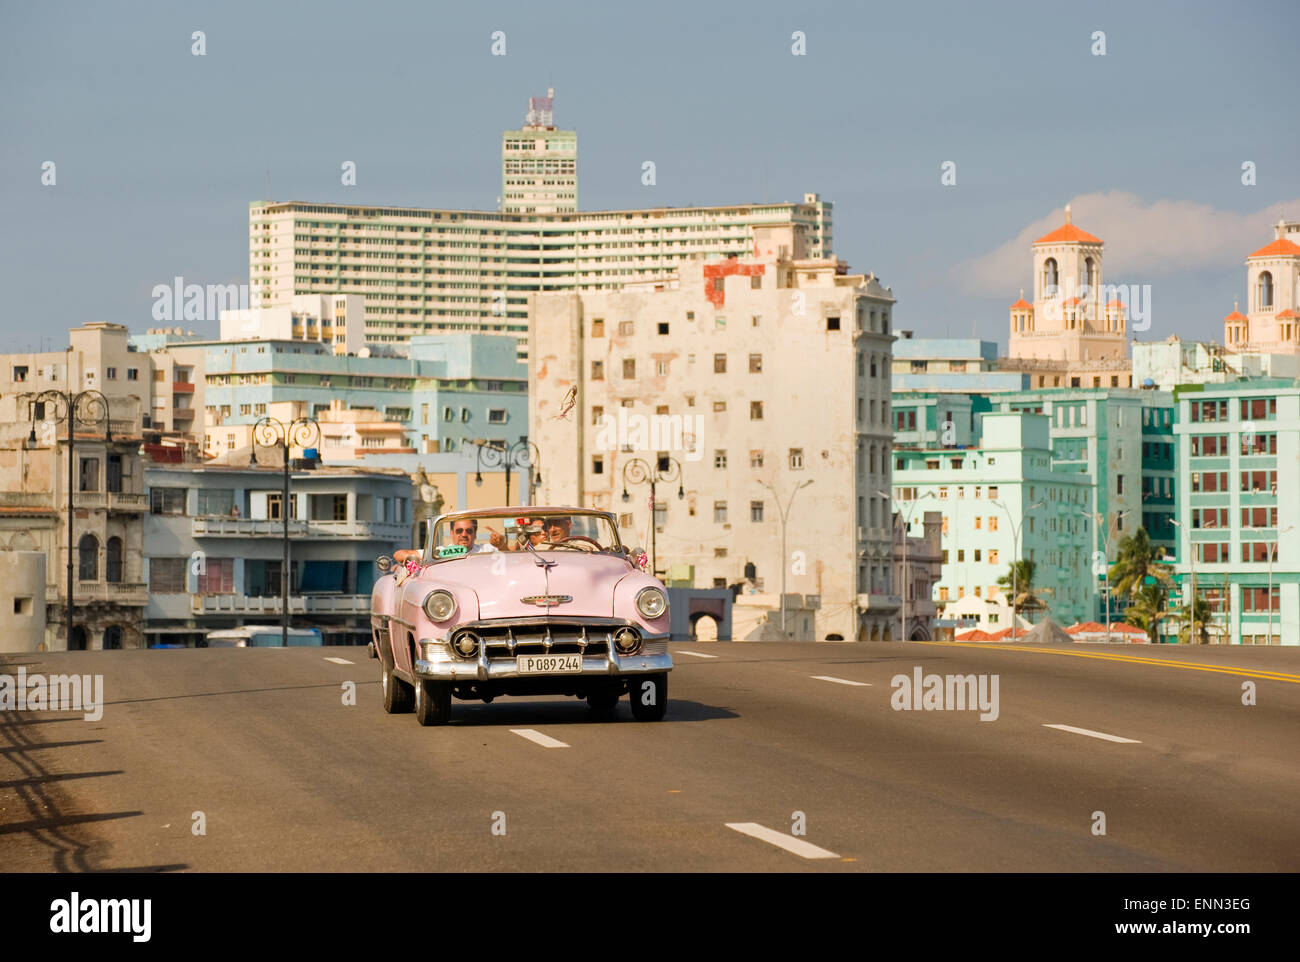 Una vecchia vettura americana, ora utilizzato come un taxi, a l'Avana, Cuba Foto Stock